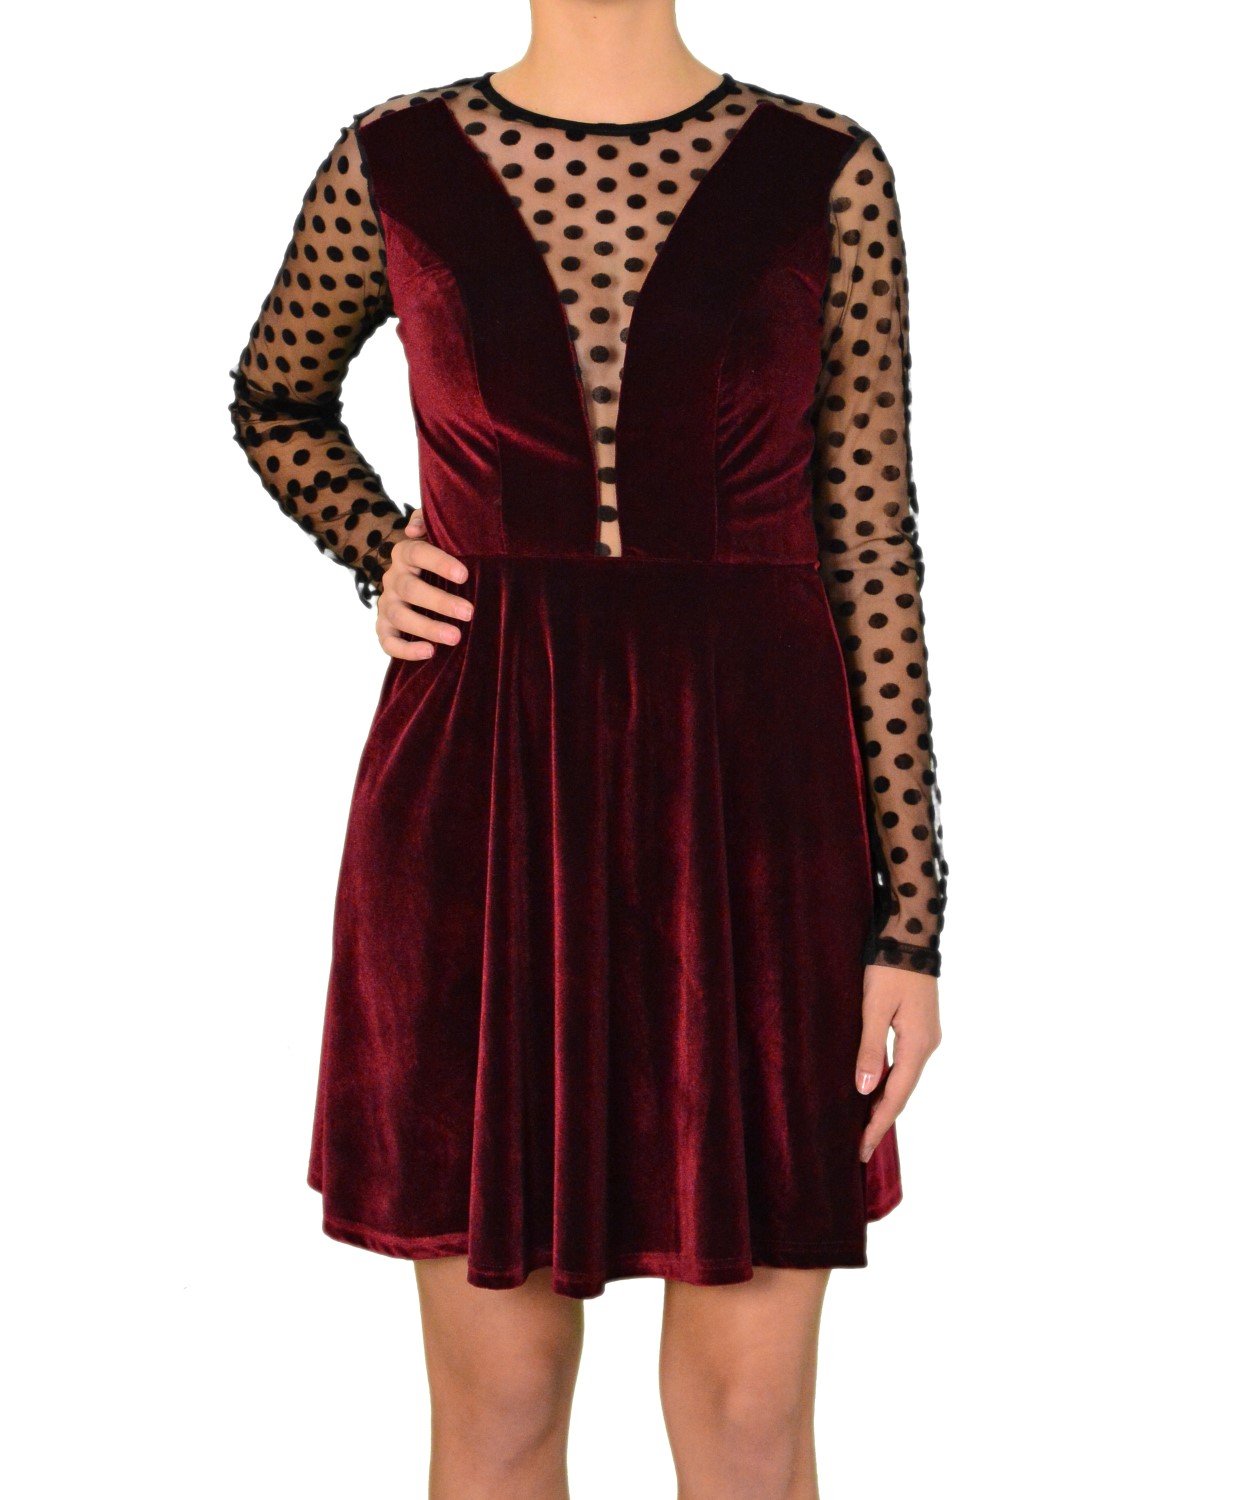 Γυναικείο φόρεμα velvet κλος με διαφάνεια μωβ 8051175F